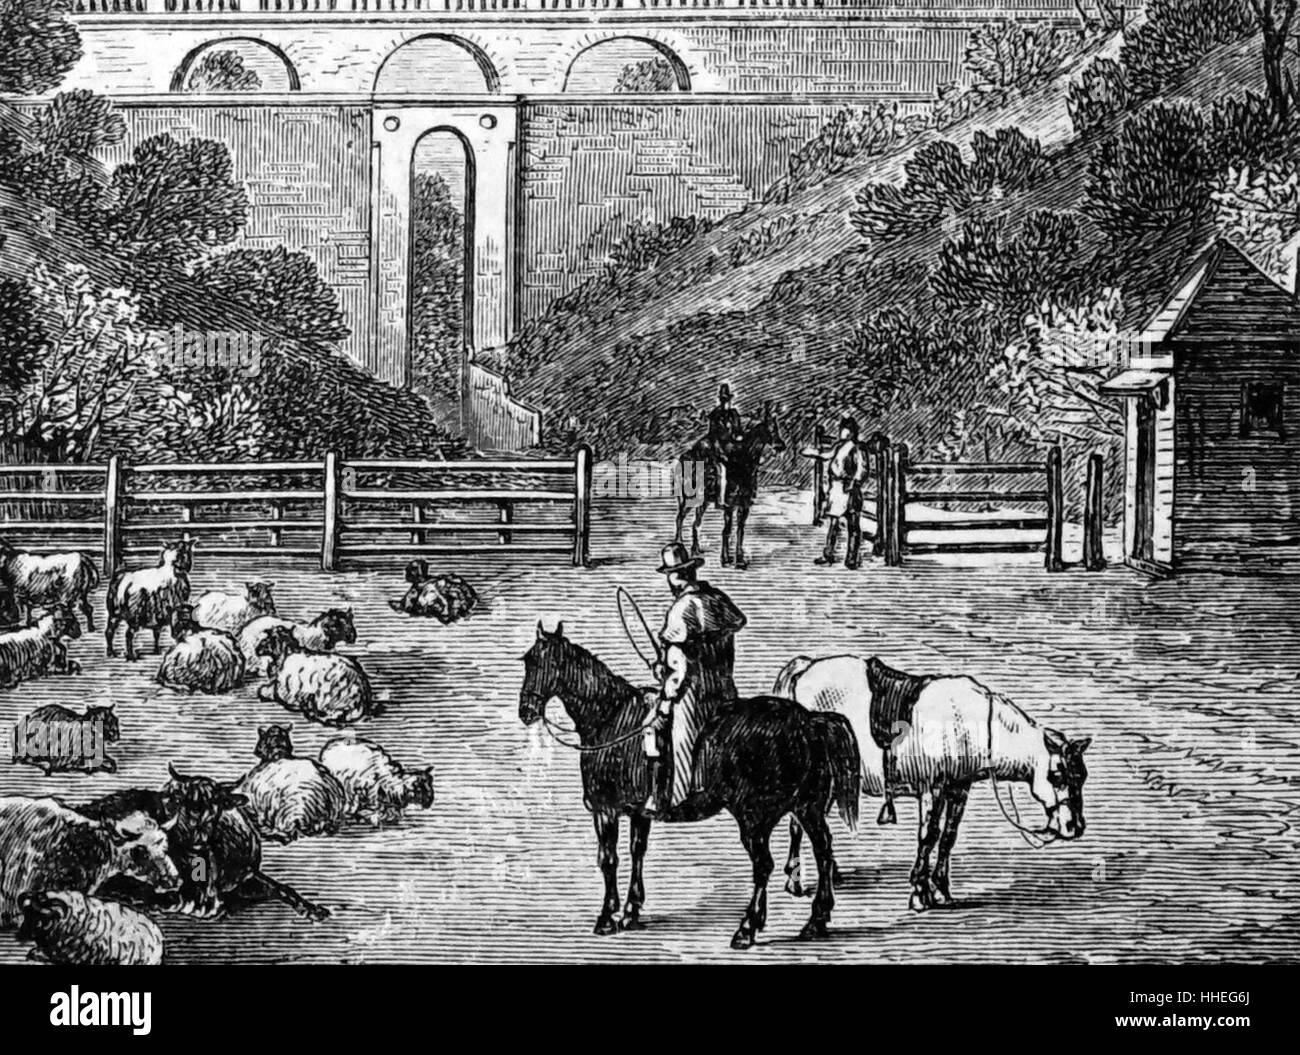 Grabado representando el arco de Highgate. Fecha del siglo XIX Foto de stock